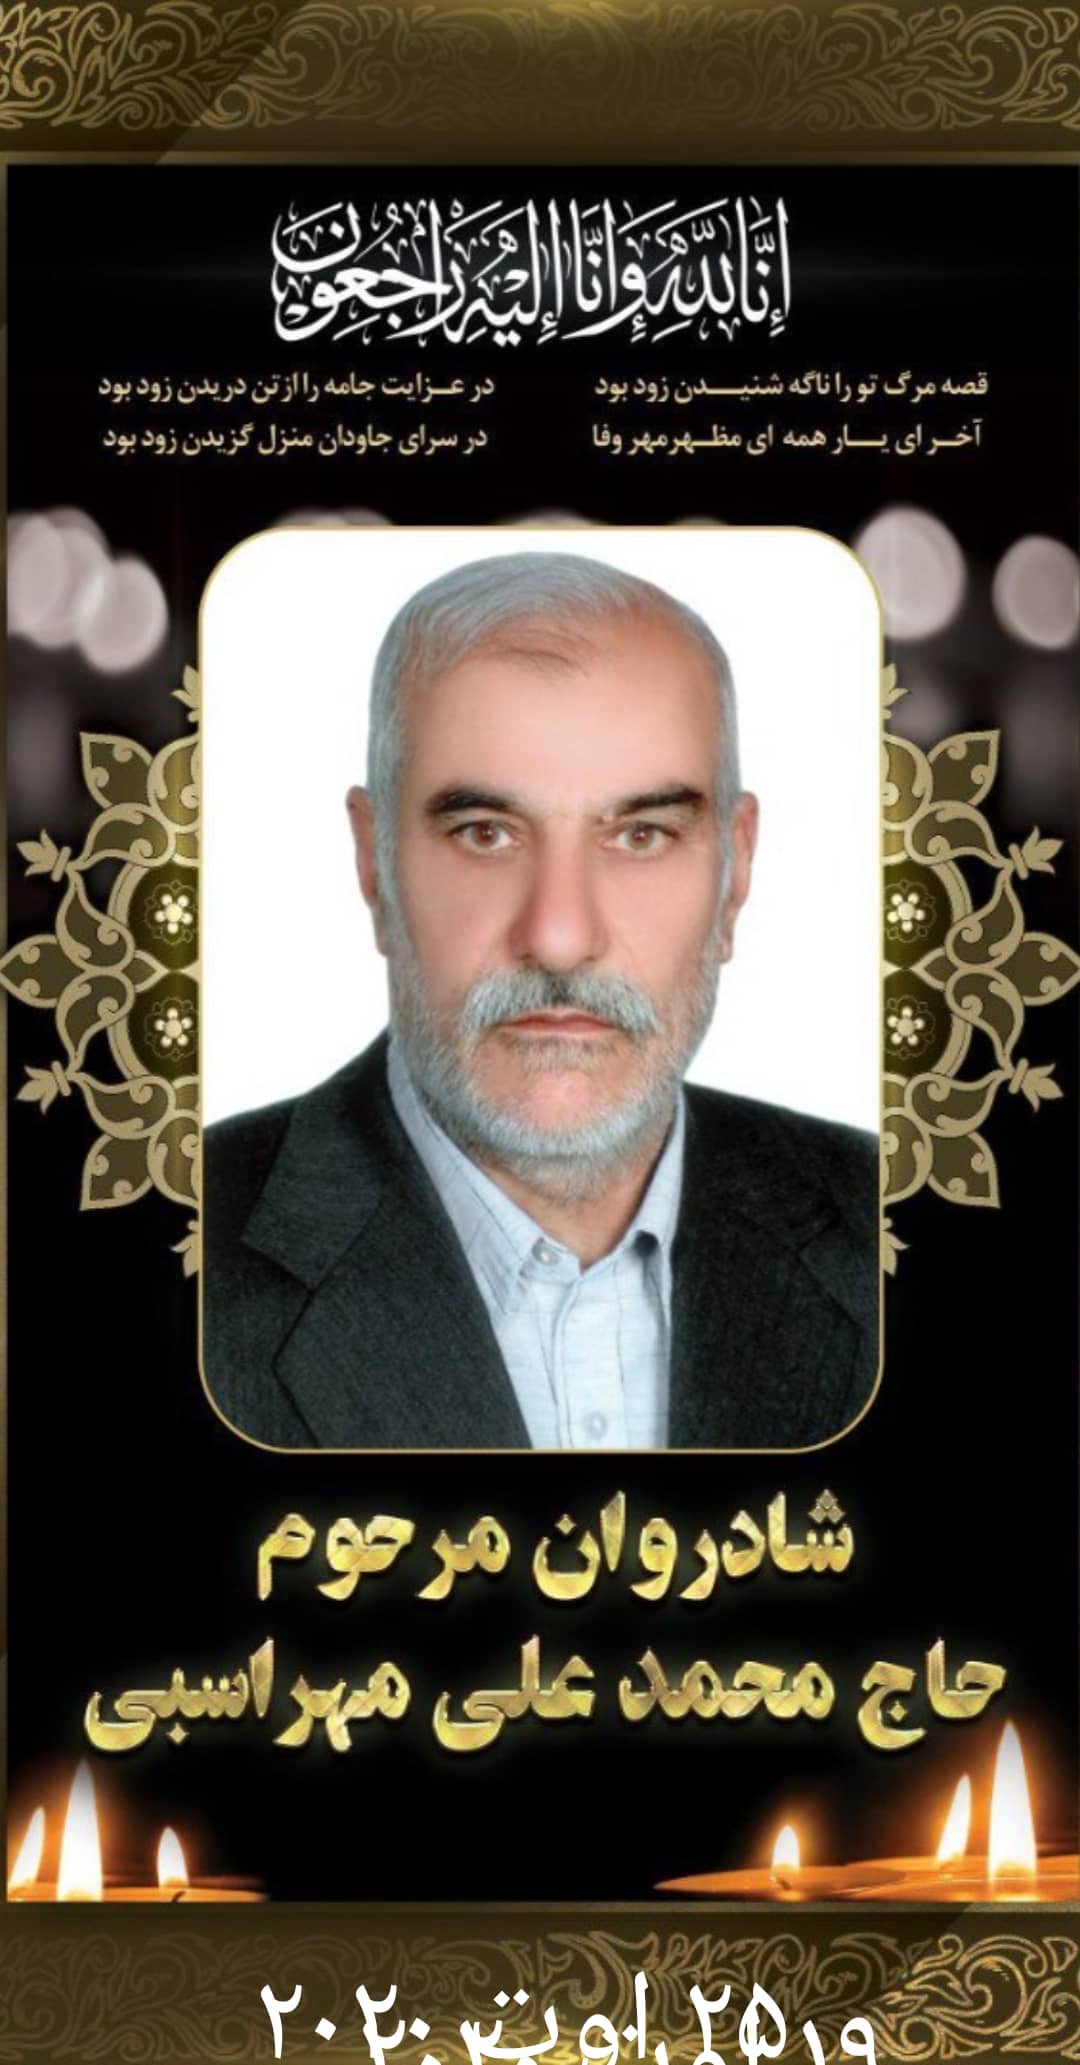 زنده یاد بزرگ خاندان حاج محمدعلی مهراسبی